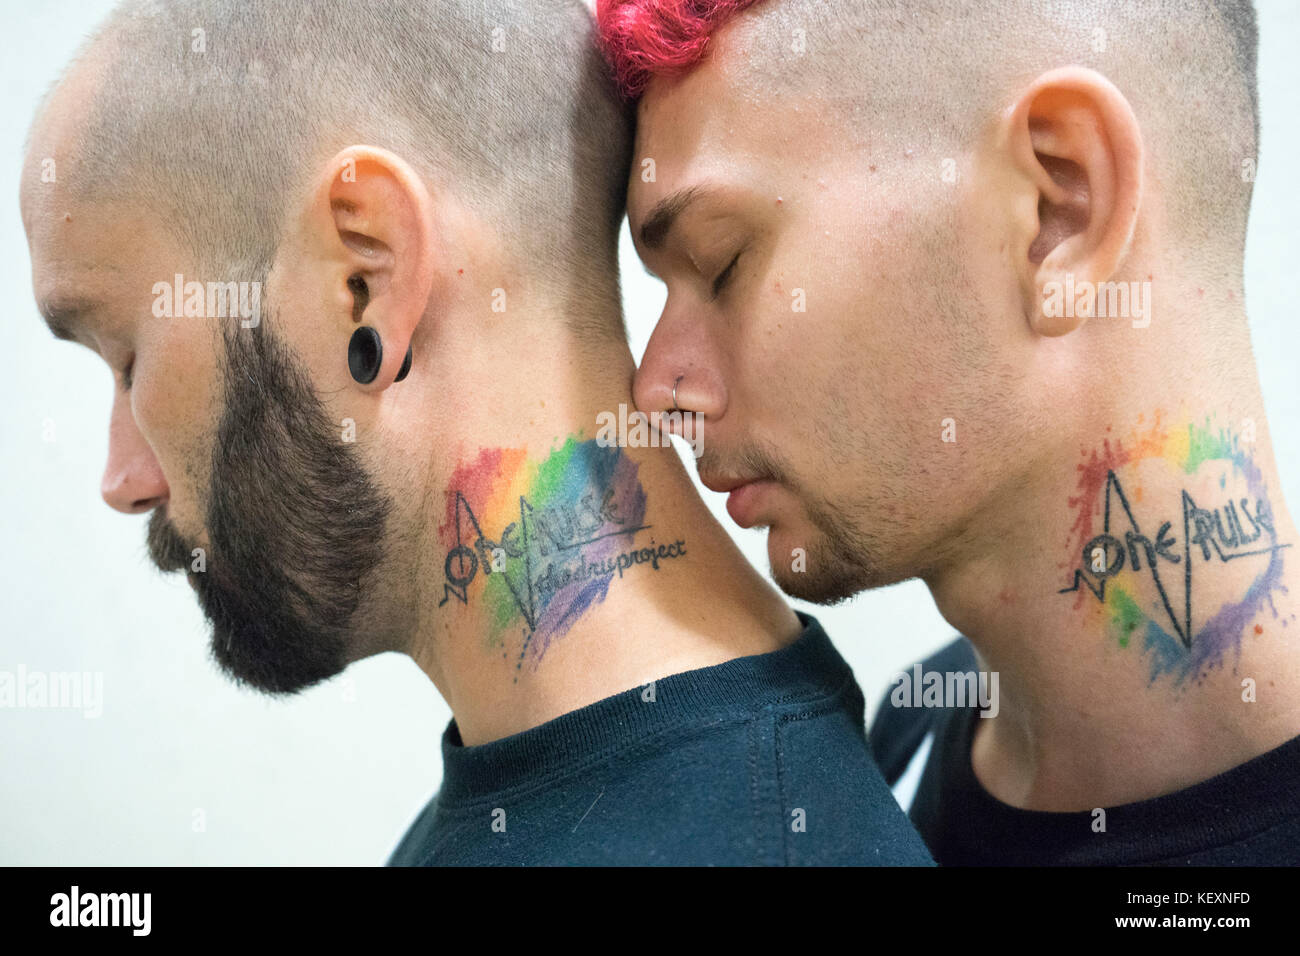 Tatuaggio arcobaleno immagini e fotografie stock ad alta risoluzione - Alamy